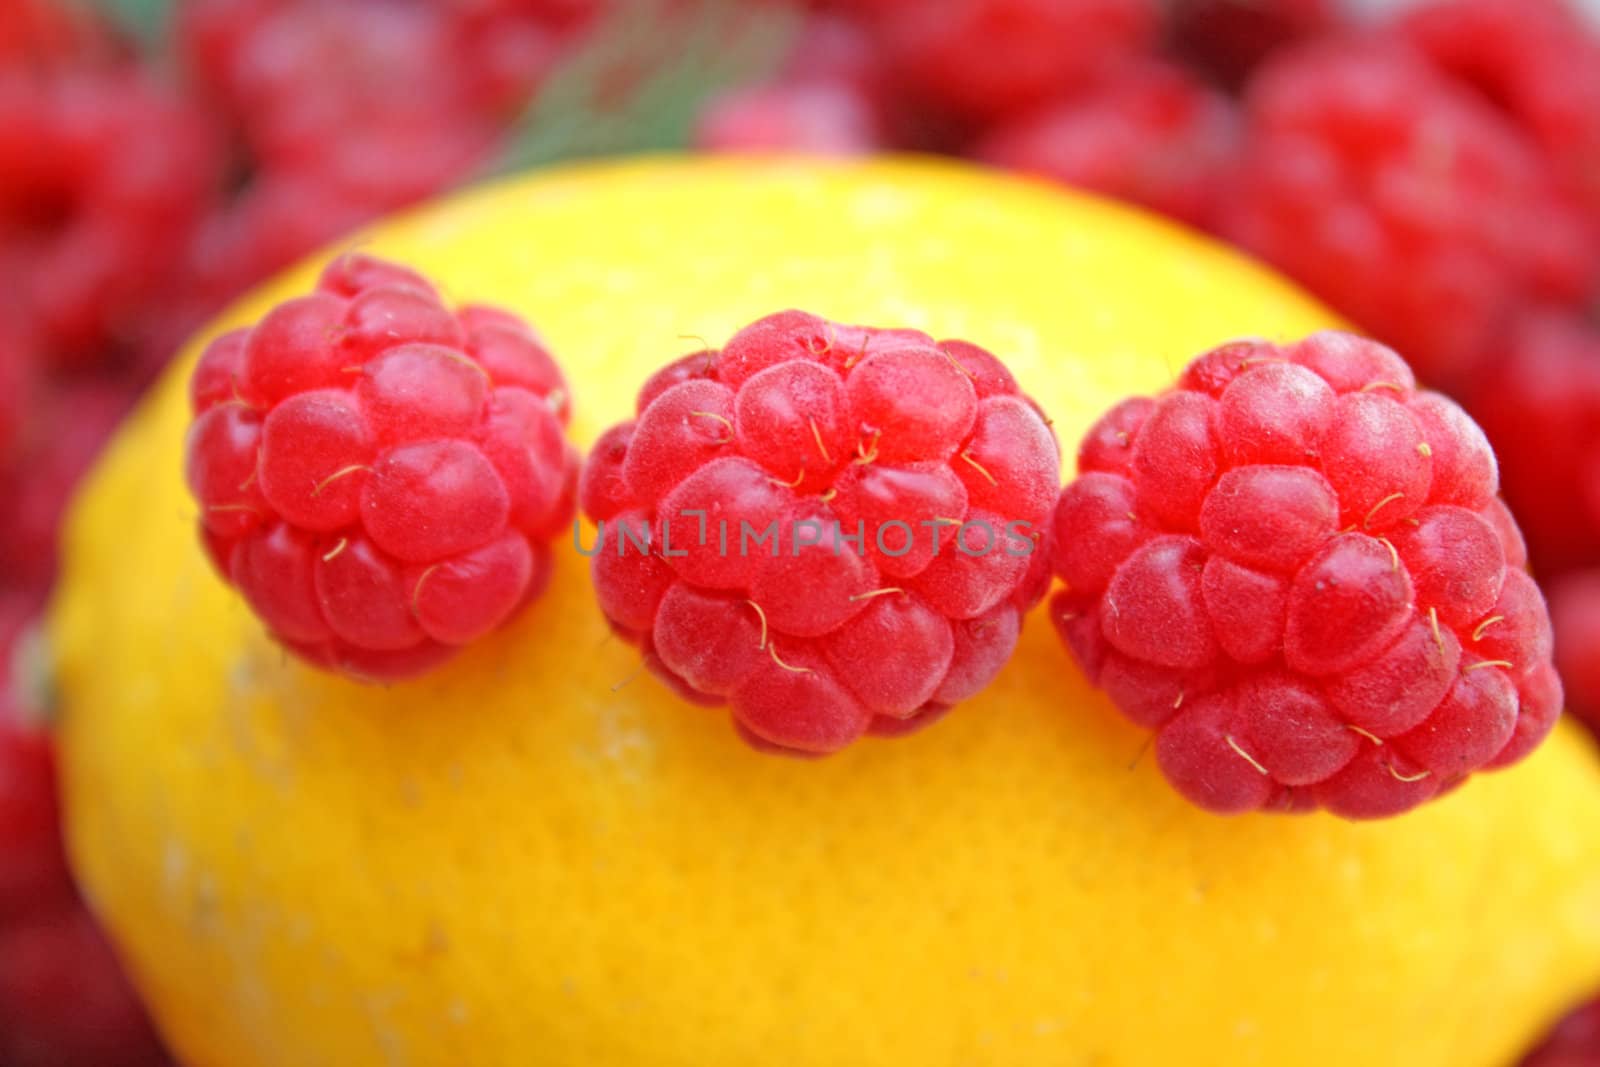 Raspberries by Lessadar